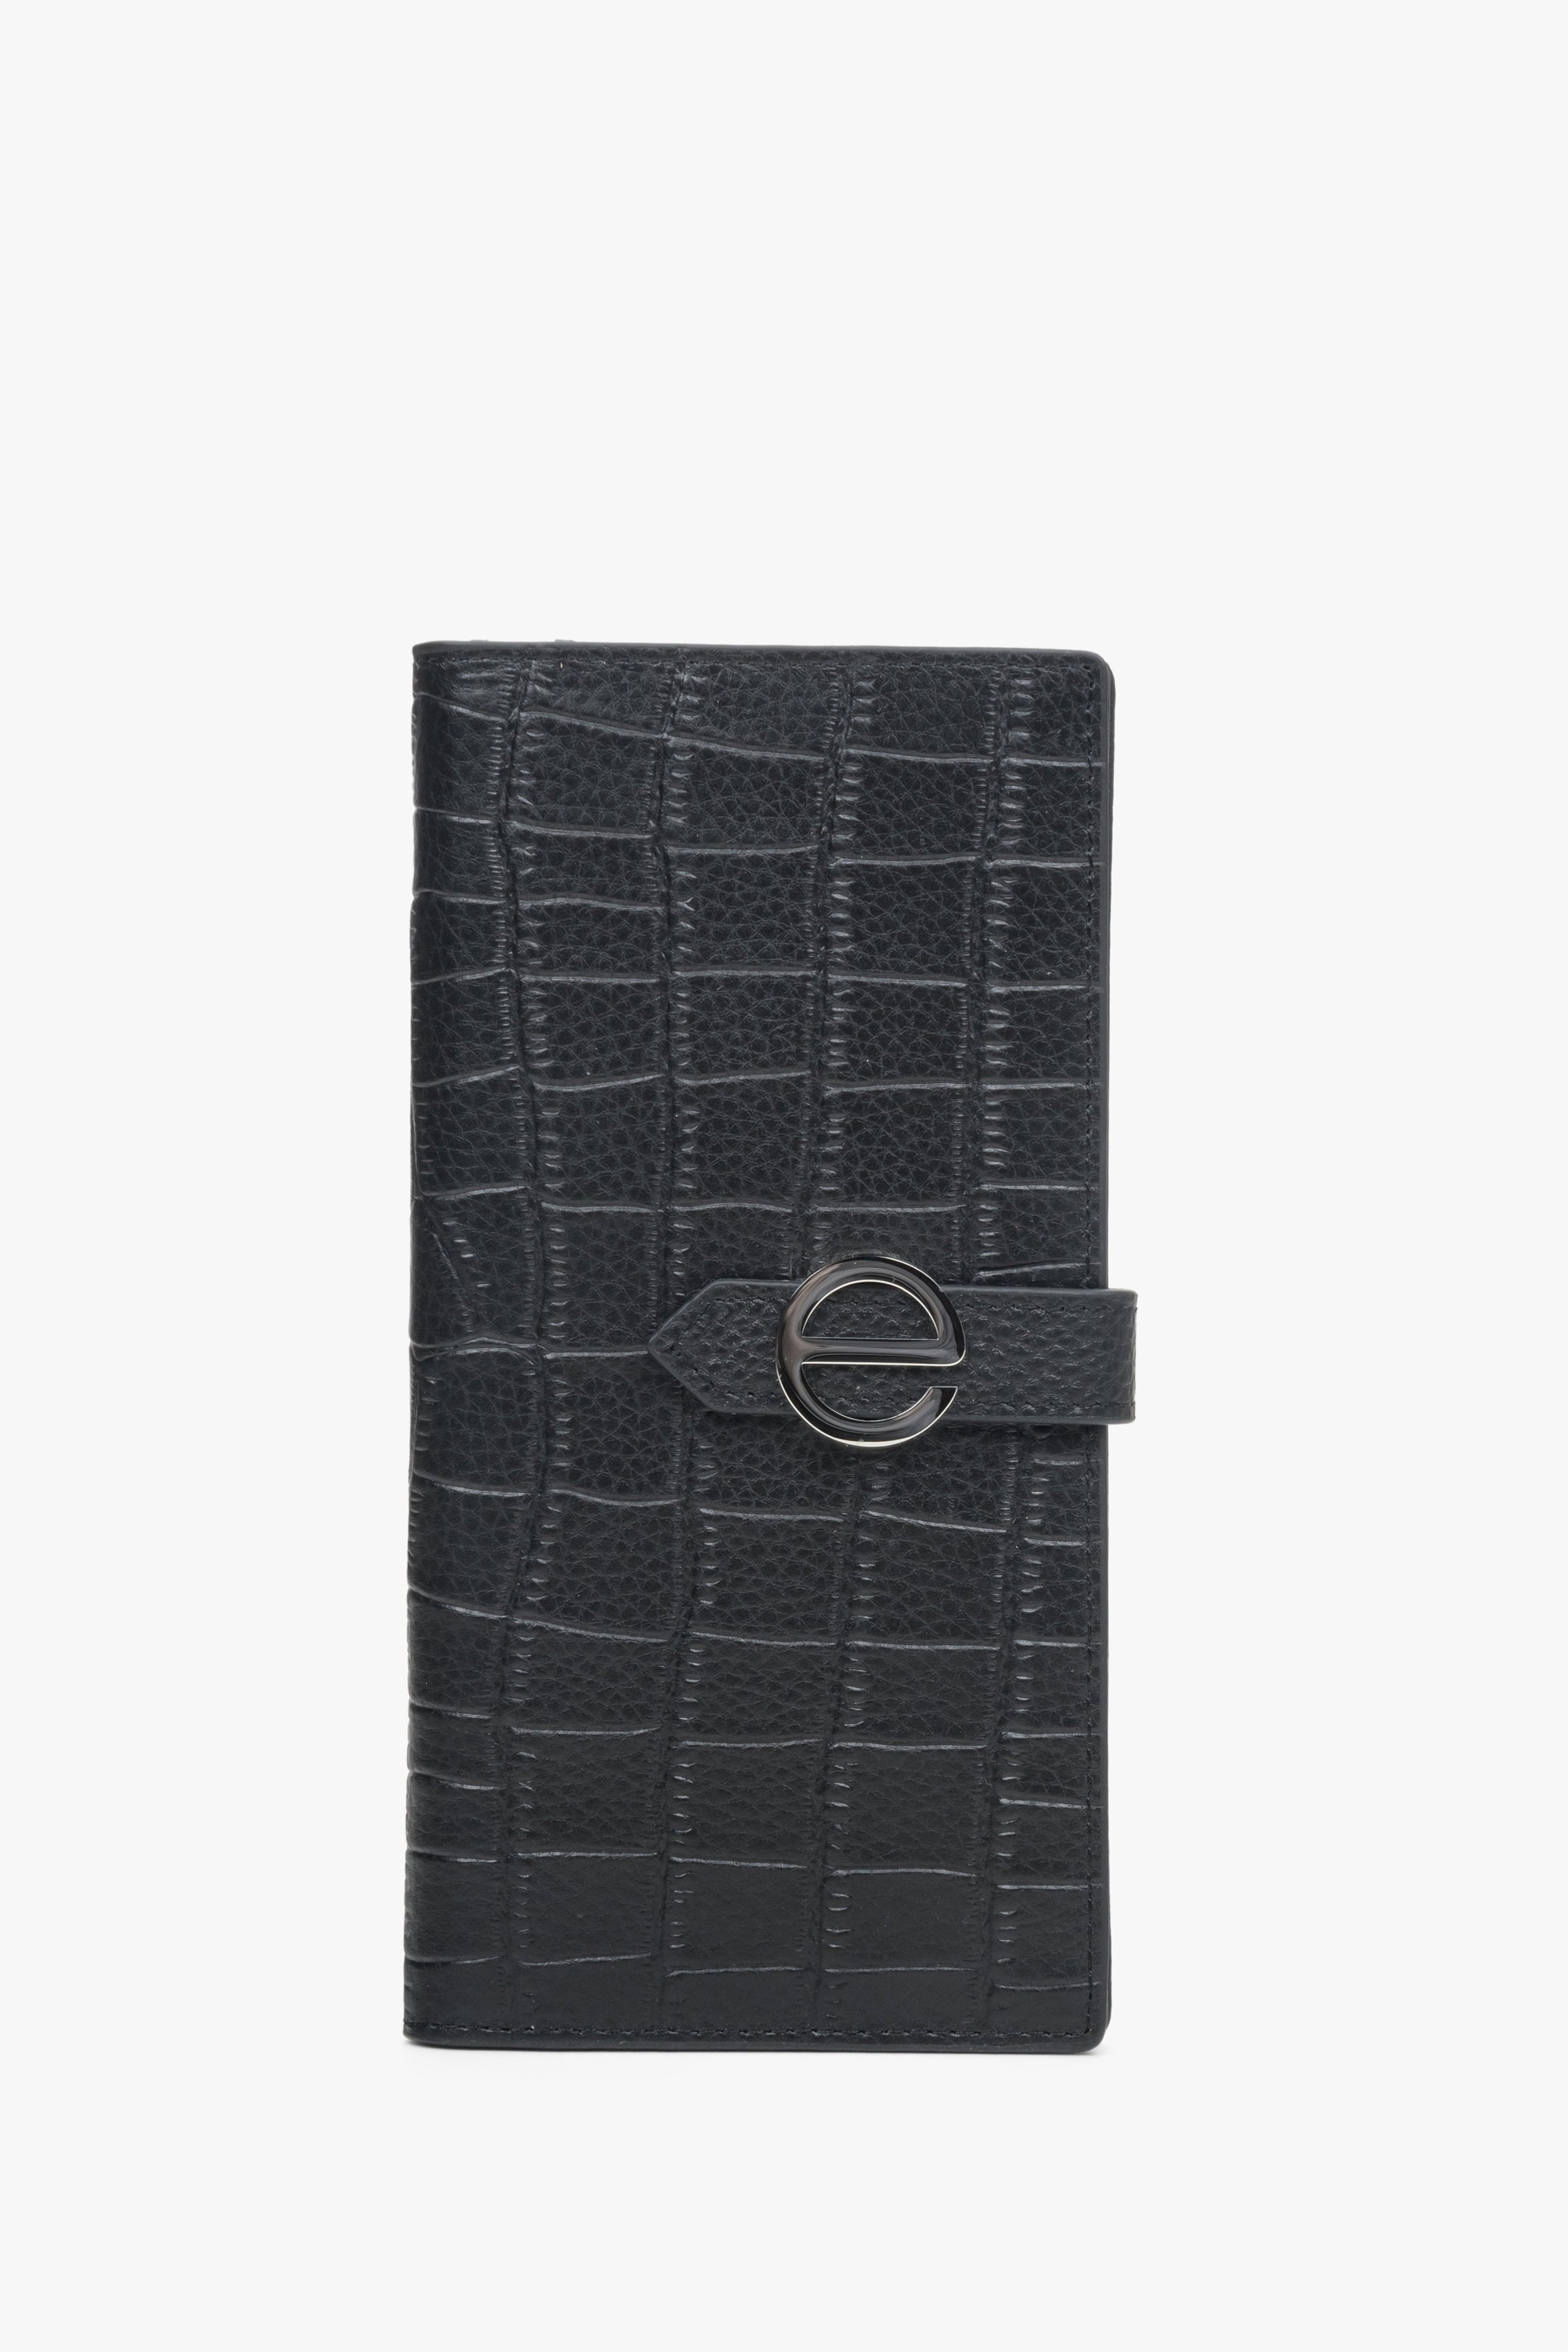 Estro: Duży czarny portfel damski z tłoczonej skóry naturalnej ze srebrnymi detalami